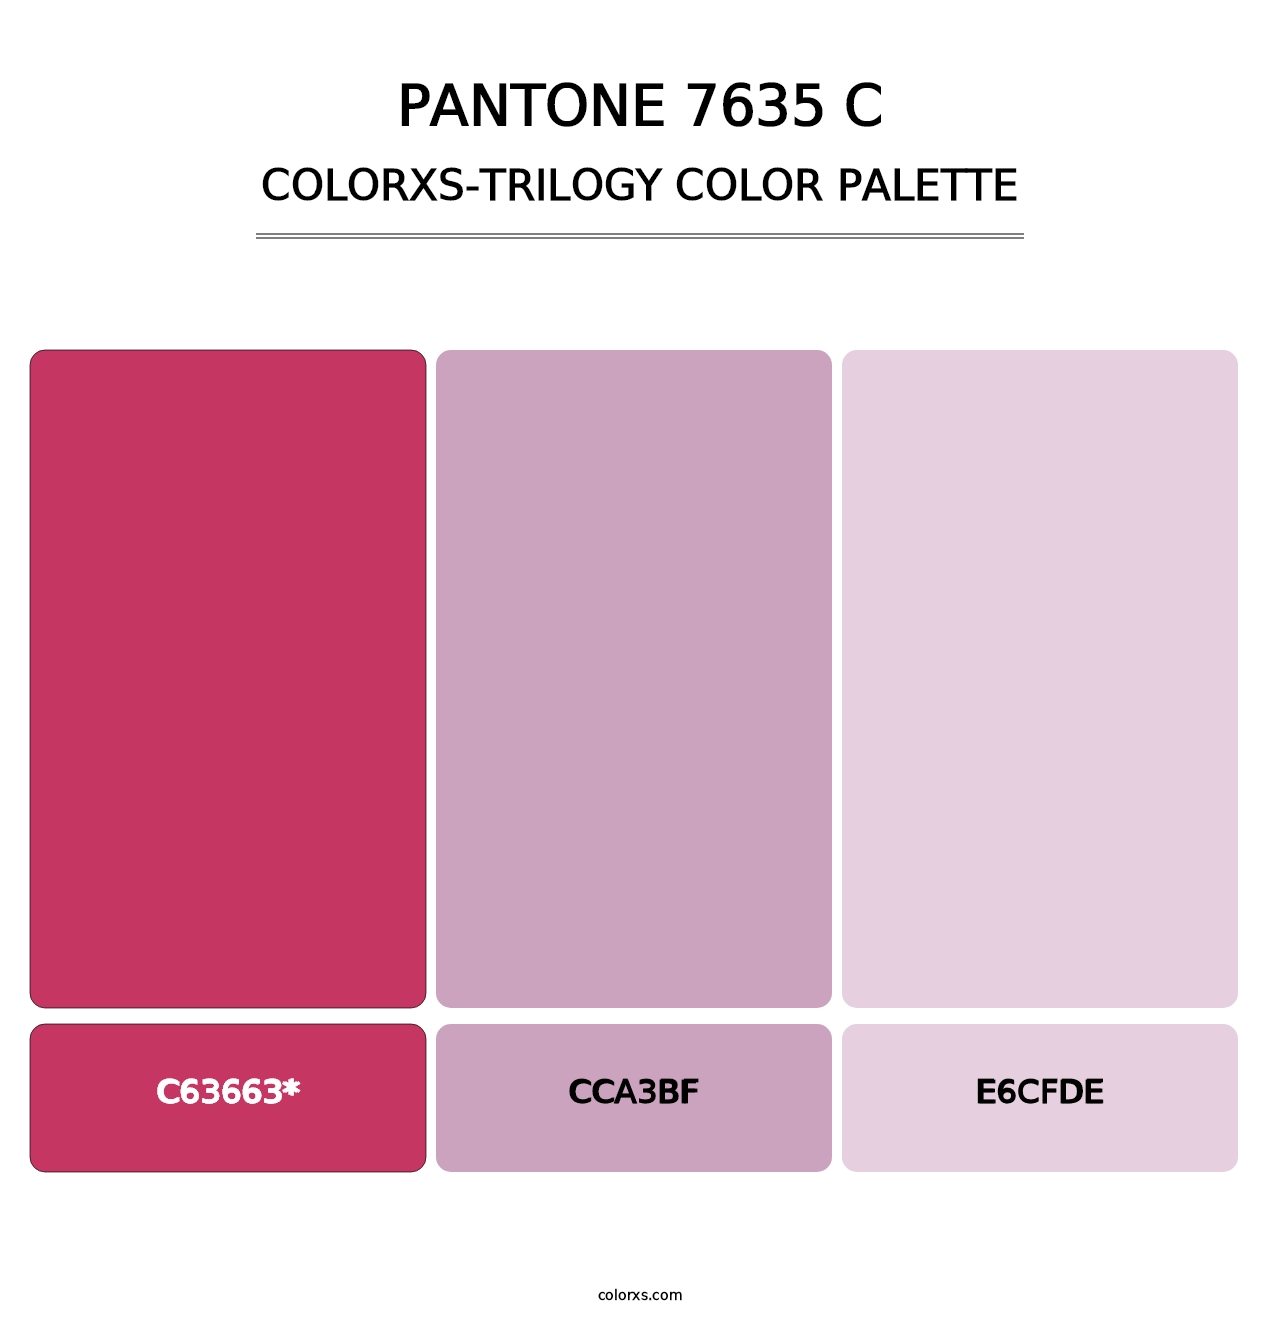 PANTONE 7635 C - Colorxs Trilogy Palette